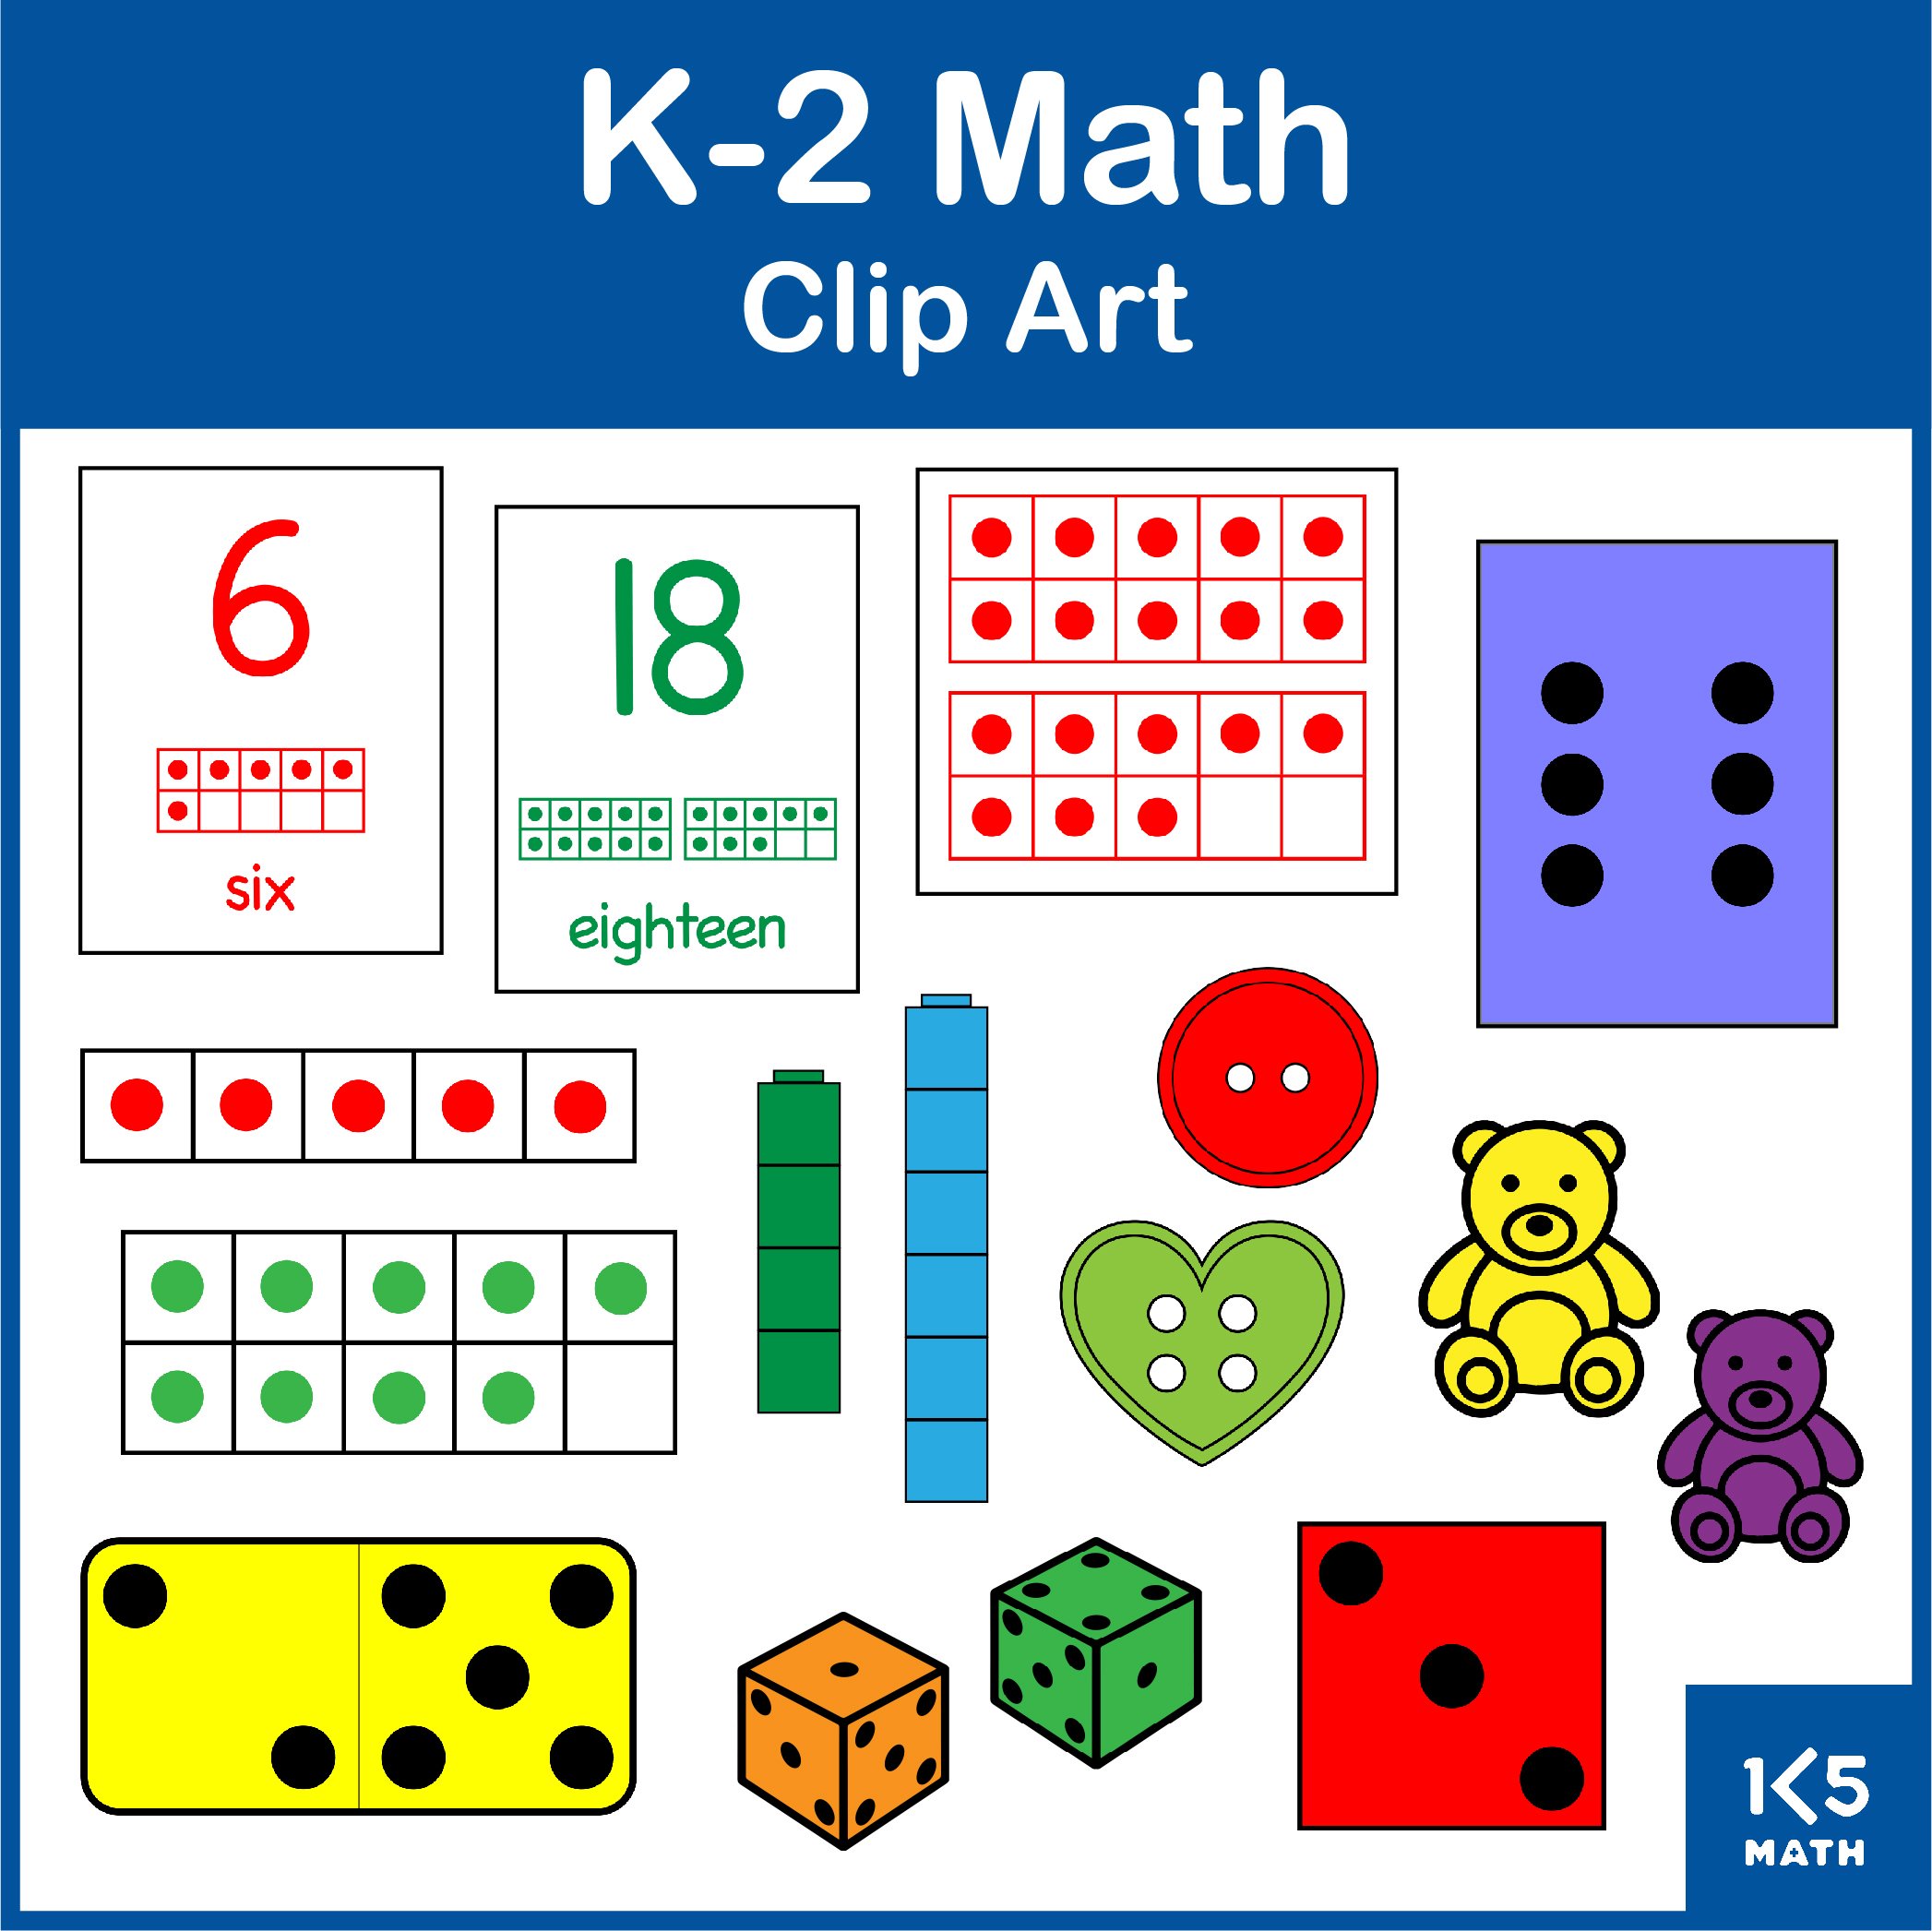 K-2 Math Clip Art Bundle contains over 1500 images.